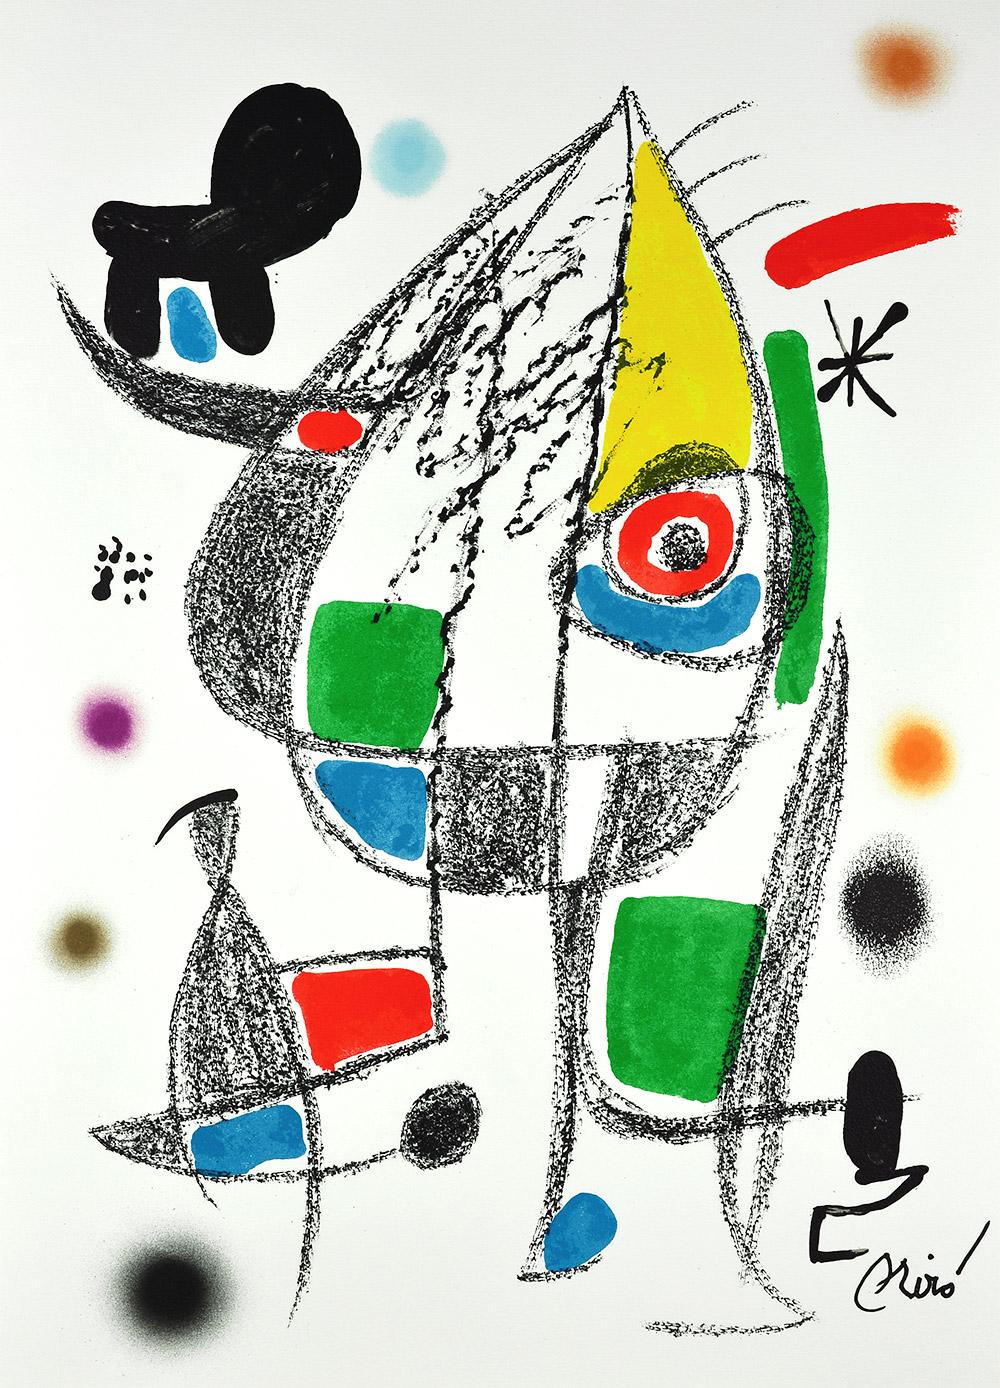 Joan Miró - Maravillas con variaciones acrósticas en el jardín de Miró XX
Datum der Gründung: 1975
Medium: Lithographie auf Gvarro-Papier
Auflage: 1500
Größe: 49,5 x 35,5 cm
Zustand: In sehr gutem Zustand und nie gerahmt
Beobachtungen: Lithographie